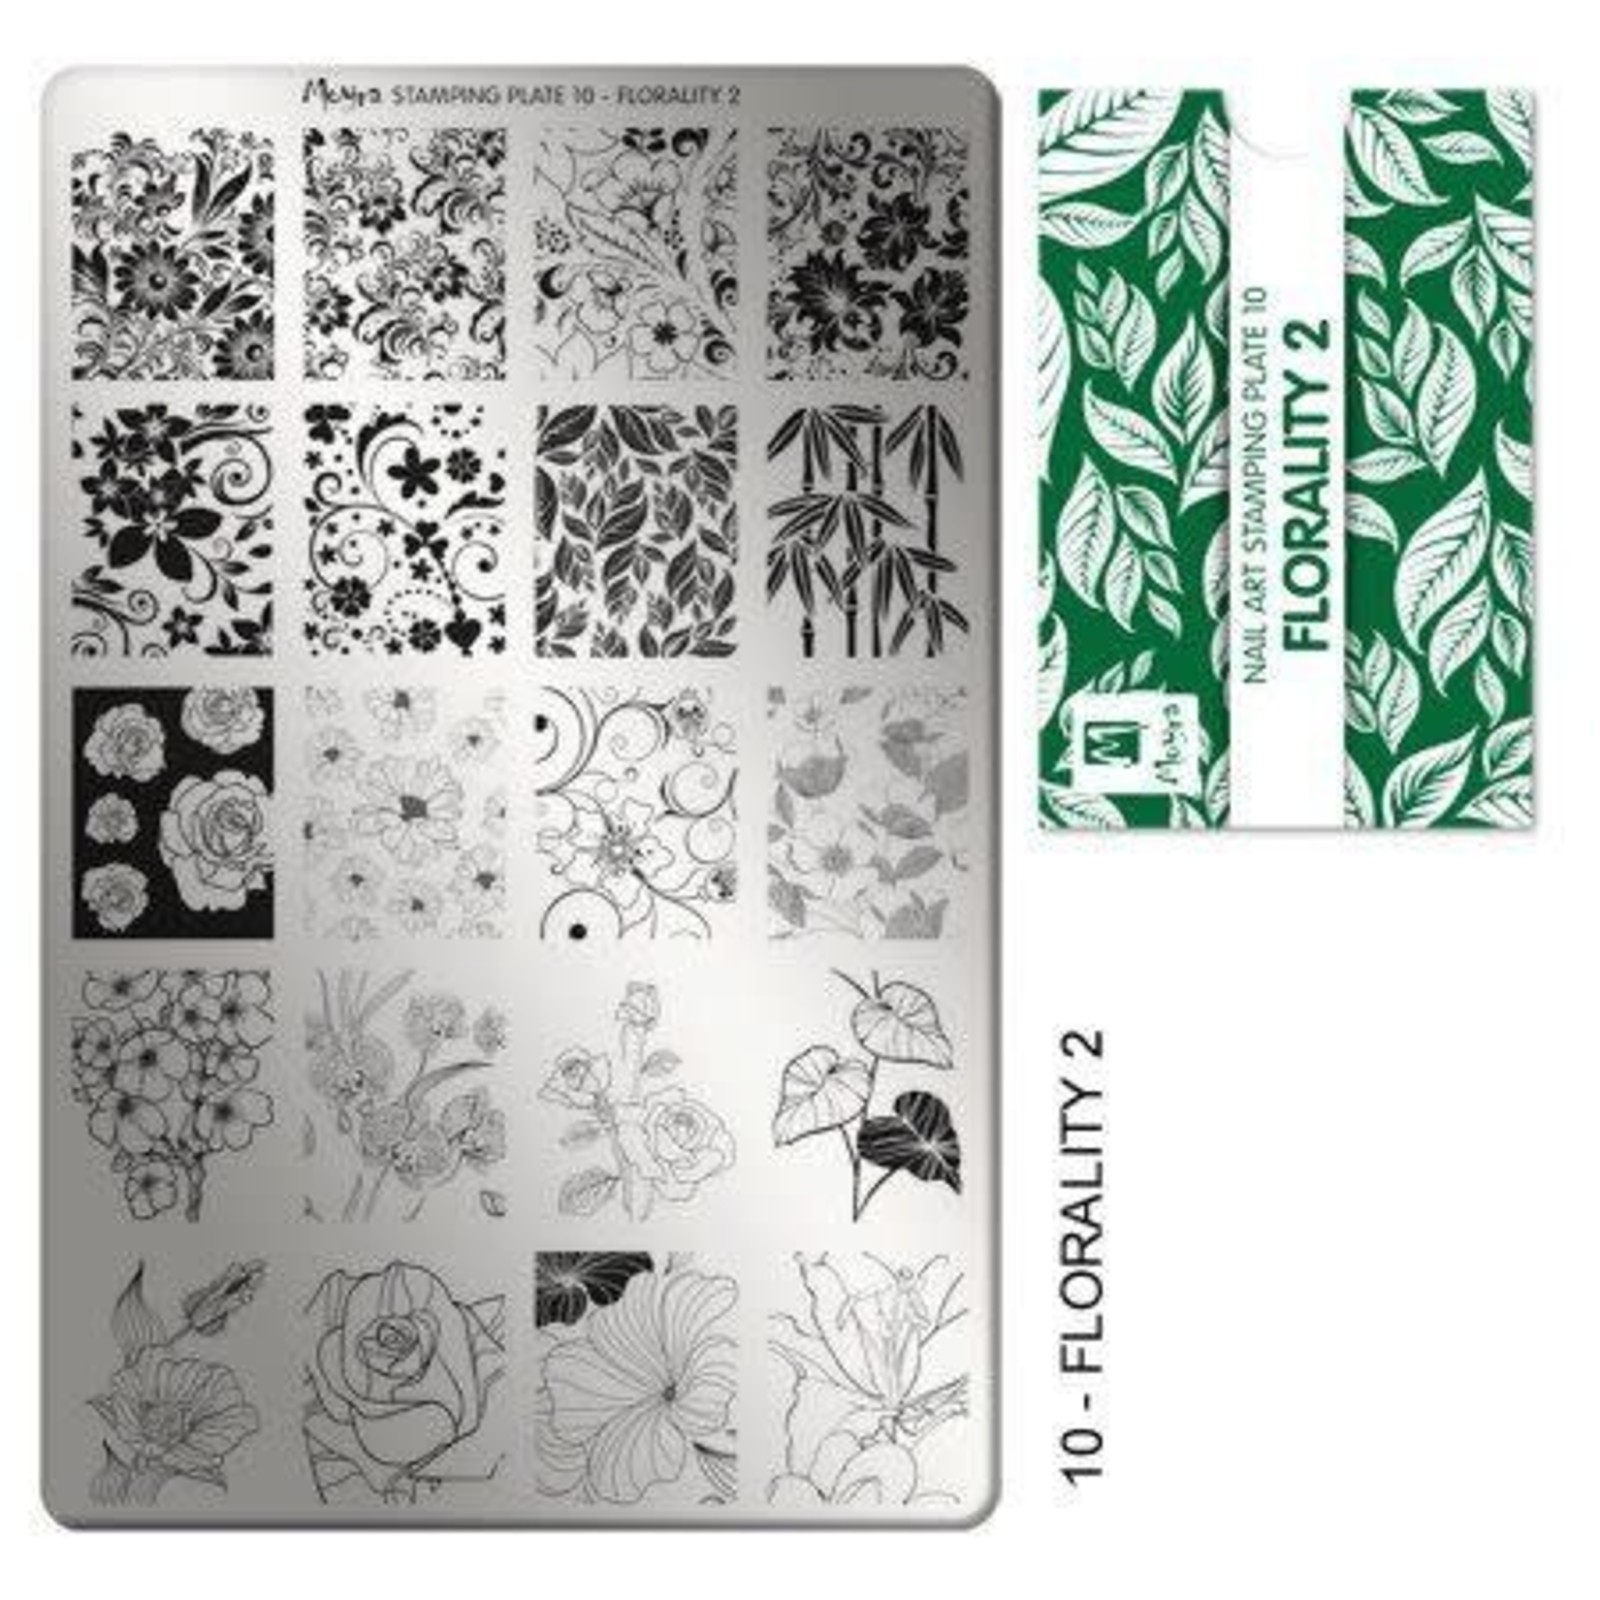 Moyra Moyra stamping plate 10 florality 2